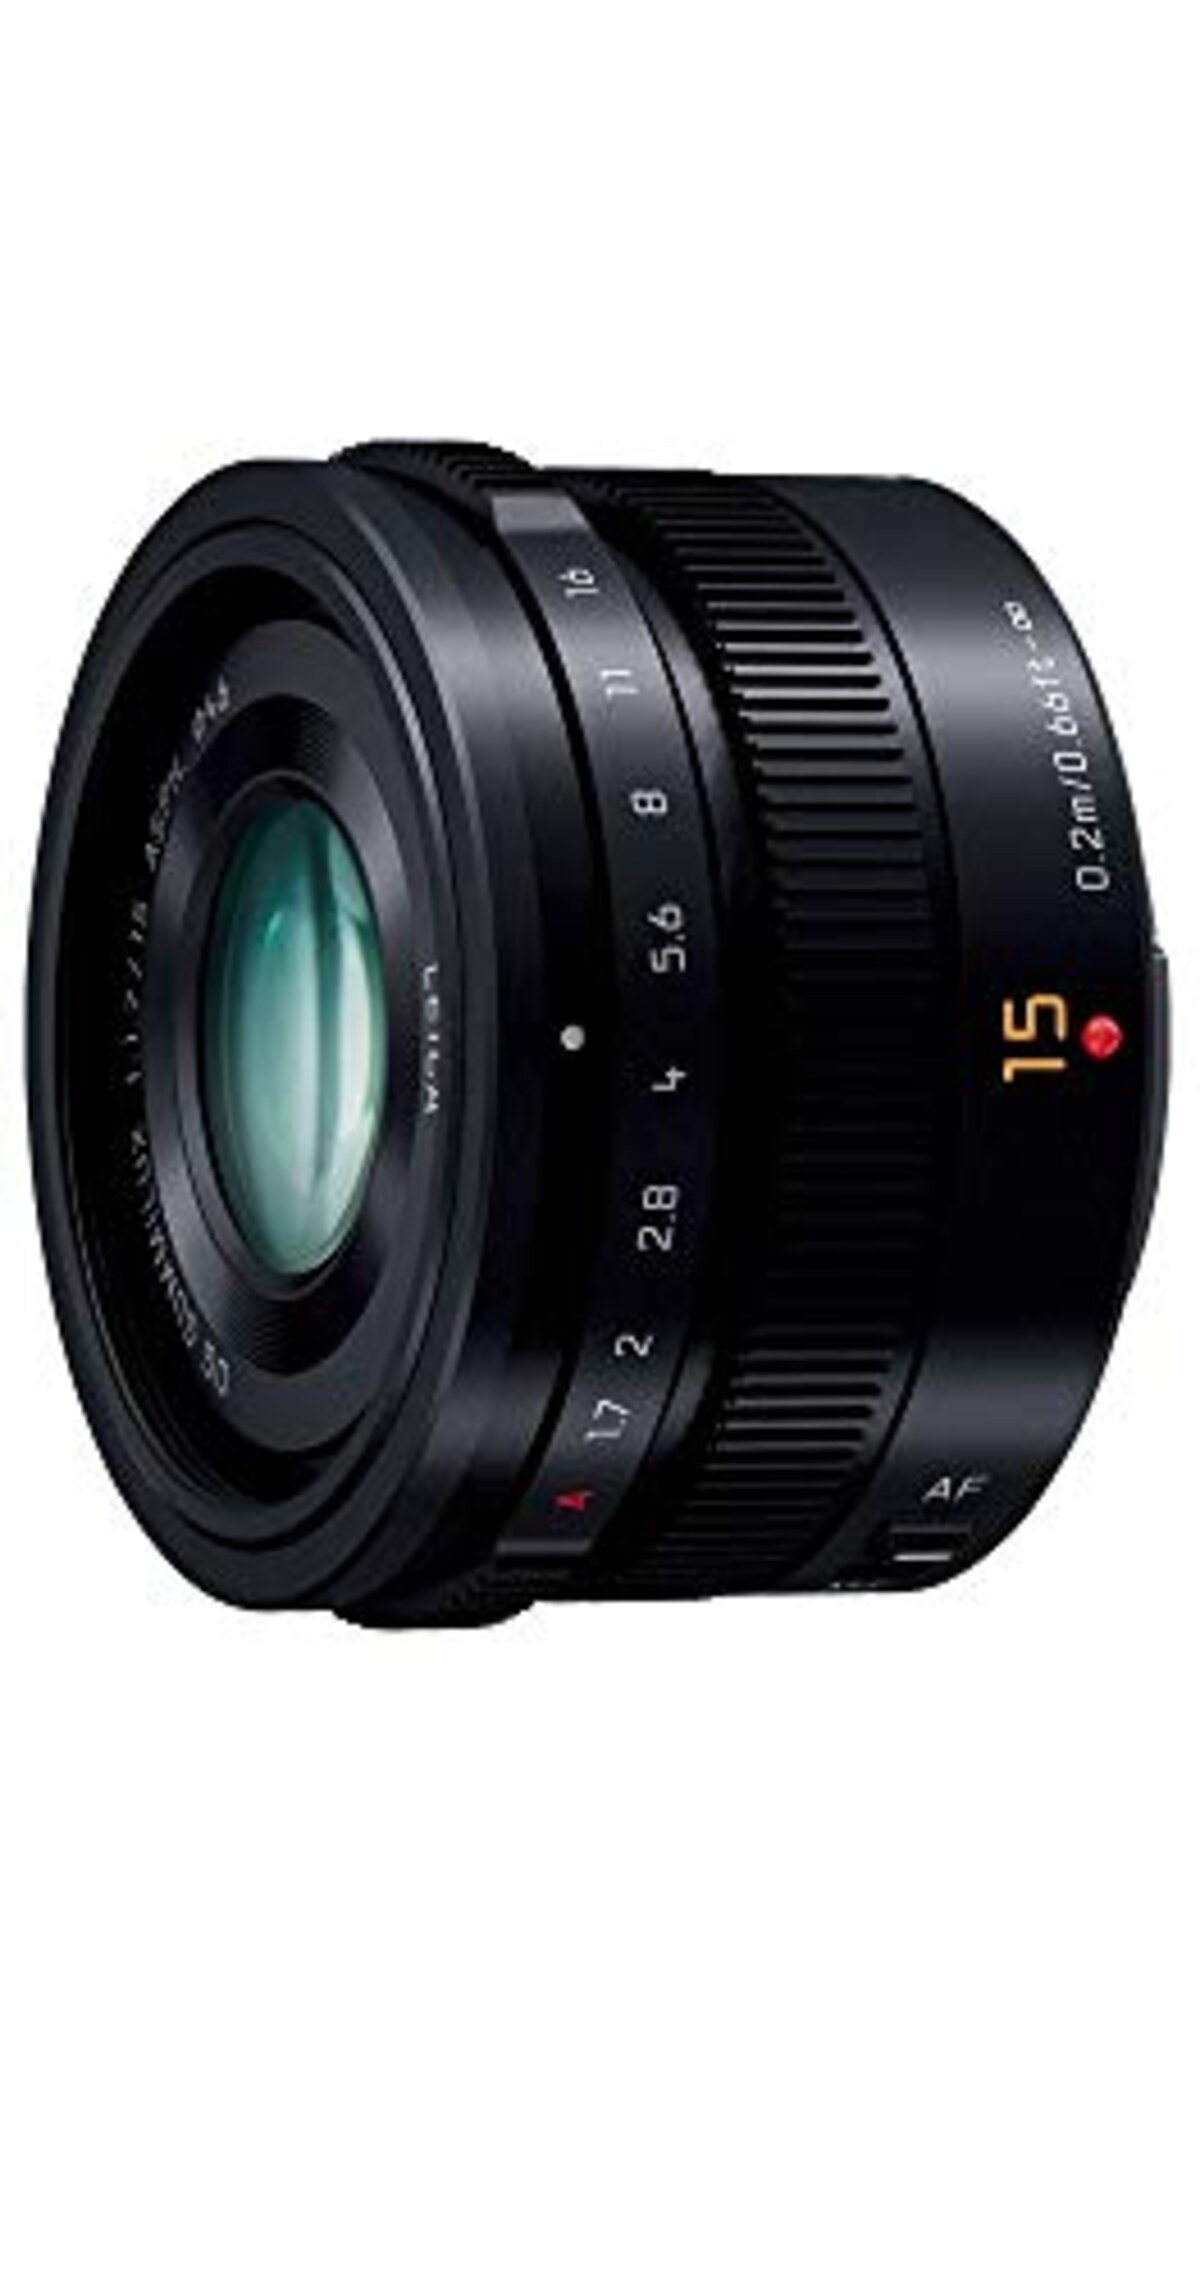  単焦点 広角レンズ マイクロフォーサーズ用 ライカ DG SUMMILUX 15mm/F1.7 ASPH. ブラック H-X015-K画像2 